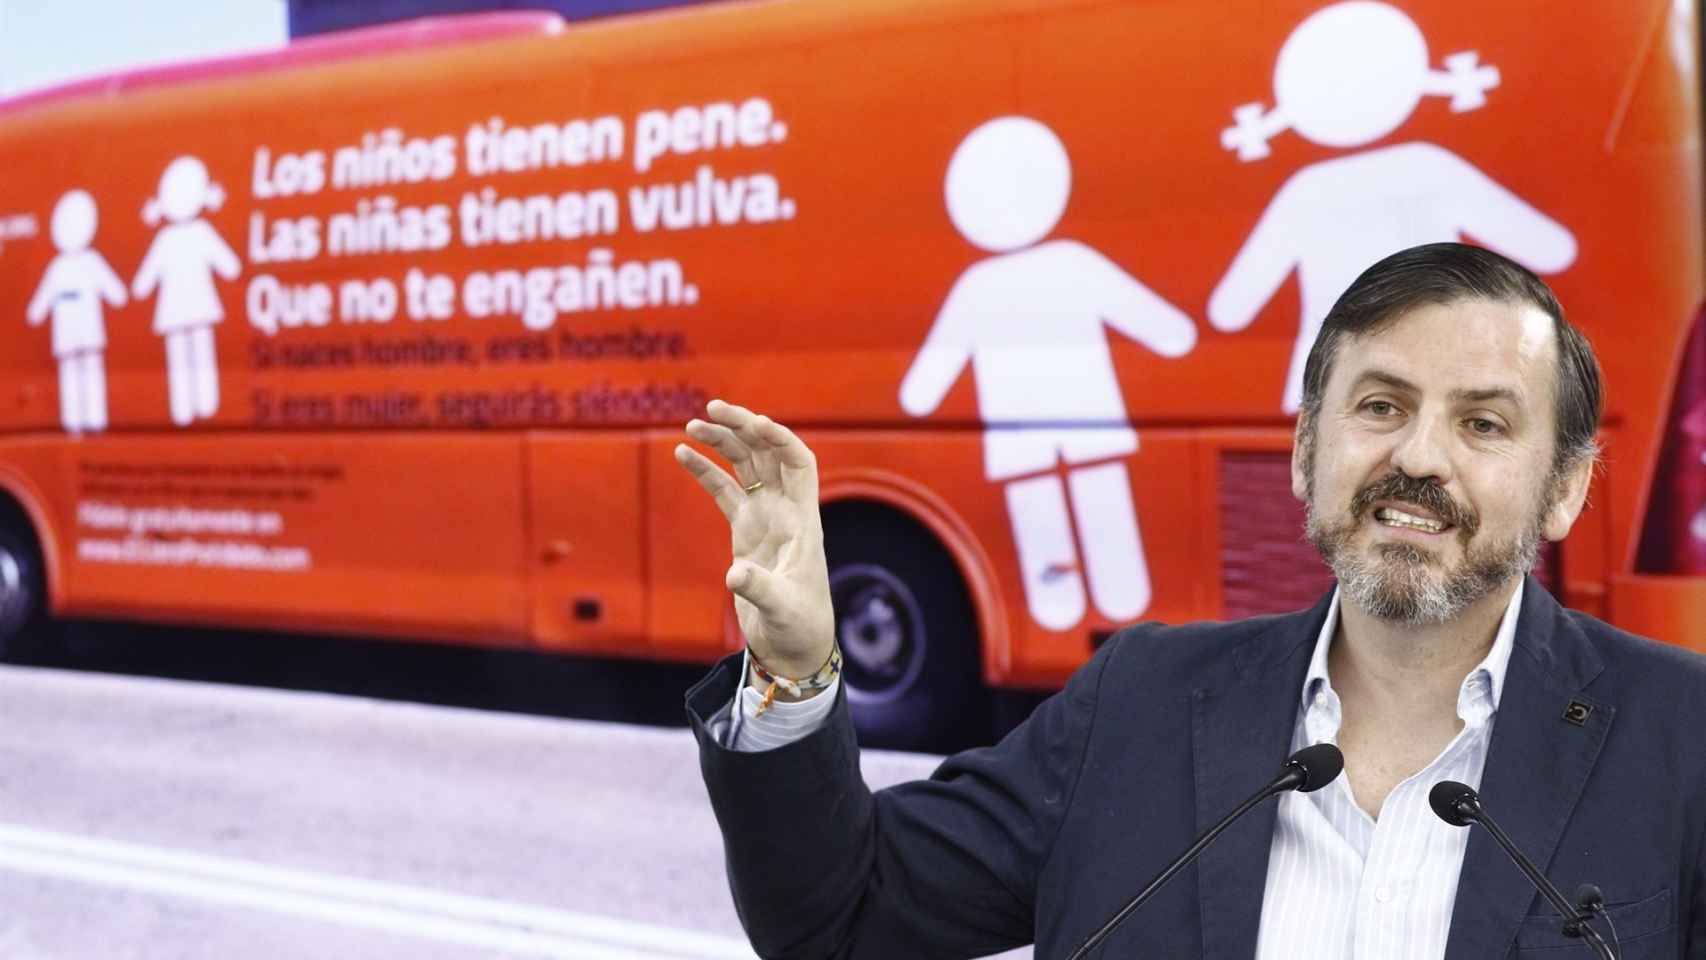 Ignacio Arsuaga con el polémico autobús.